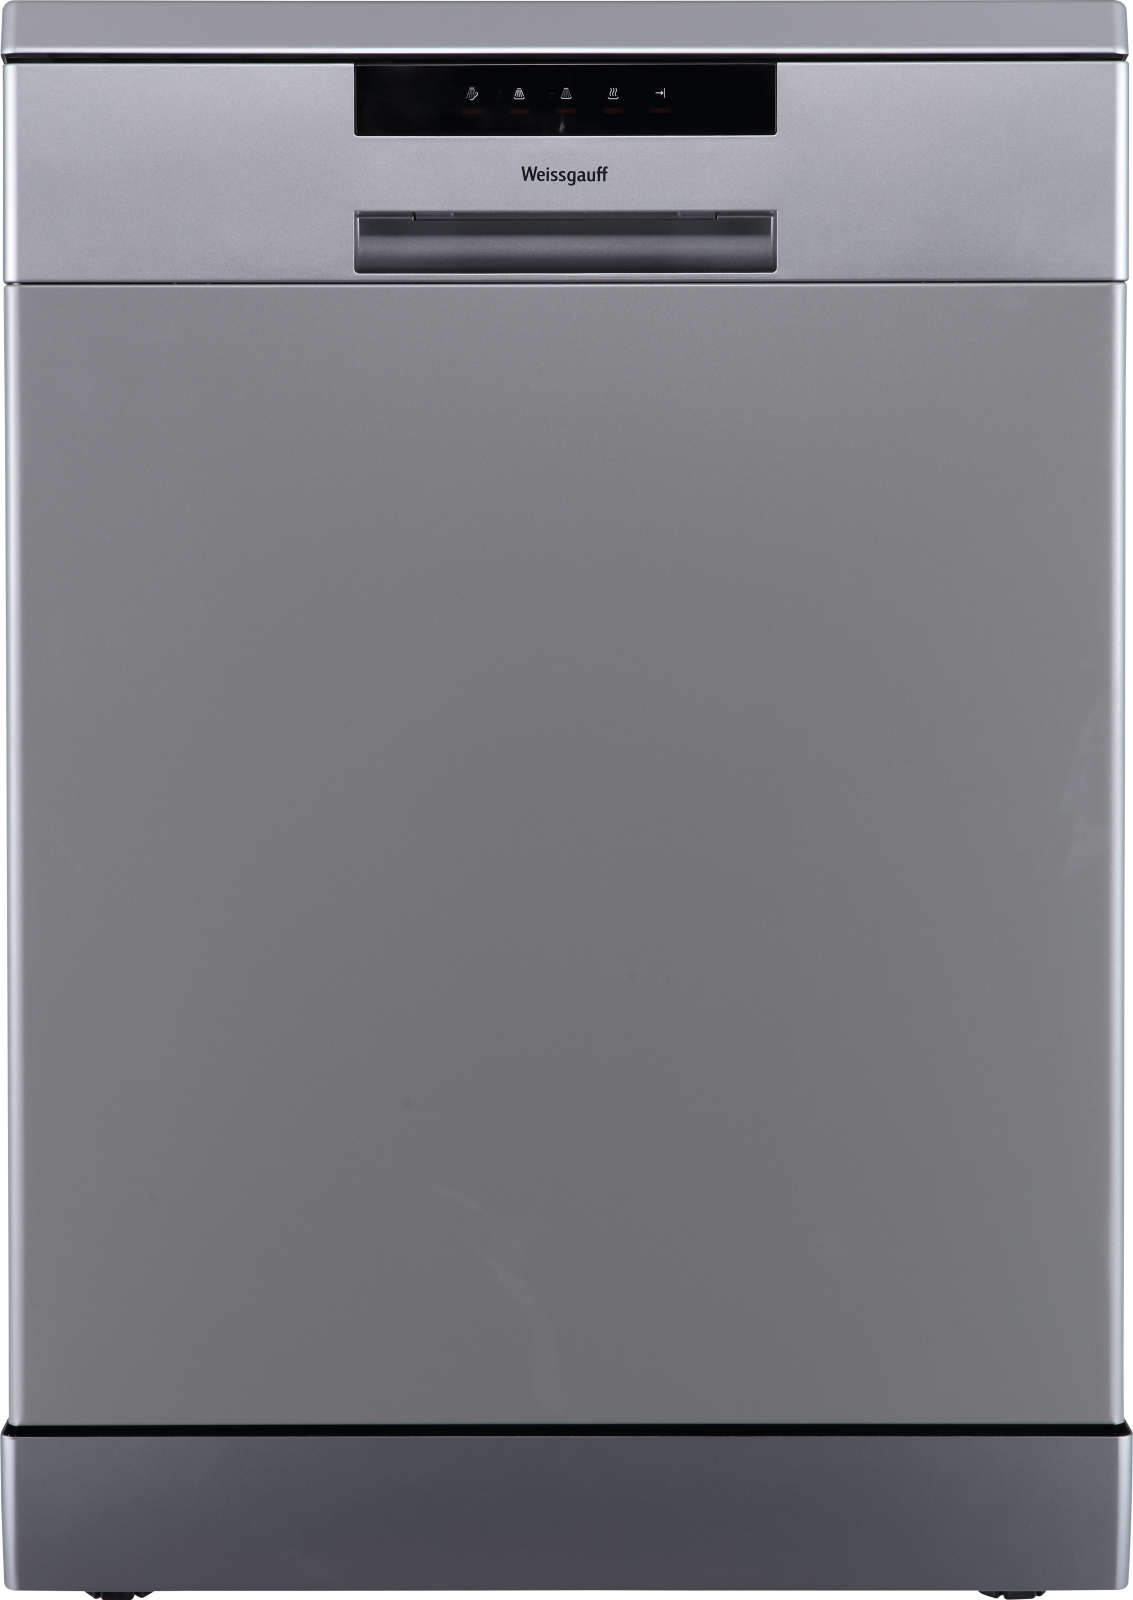 Посудомоечная машина Weissgauff DW 6013 Inox серебристый посудомоечная машина bomann gsp 7412 inox